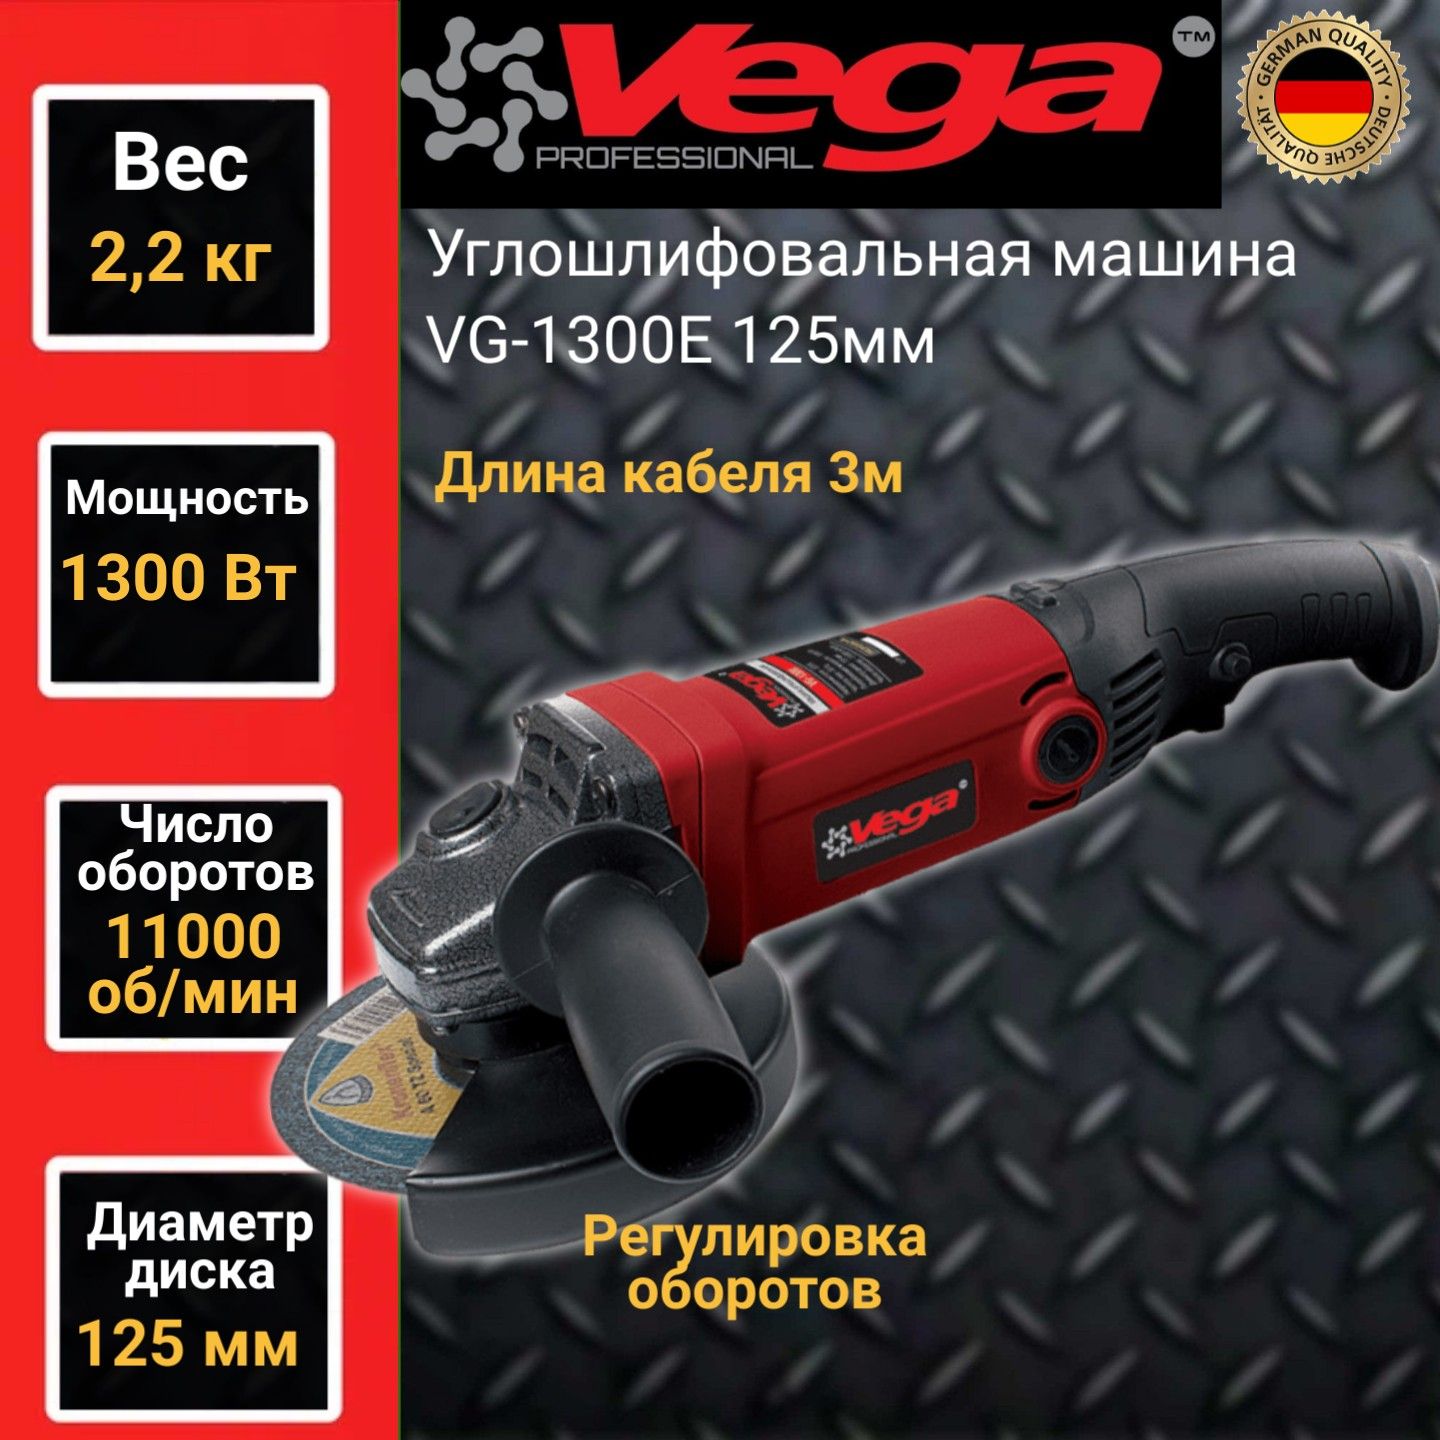 Углошлифовальная машина болгарка Vega Professional VG 1300Е, 125мм круг, 1300Вт,11000об/м углошлифовальная машина kress ku801 9 без акб и зу